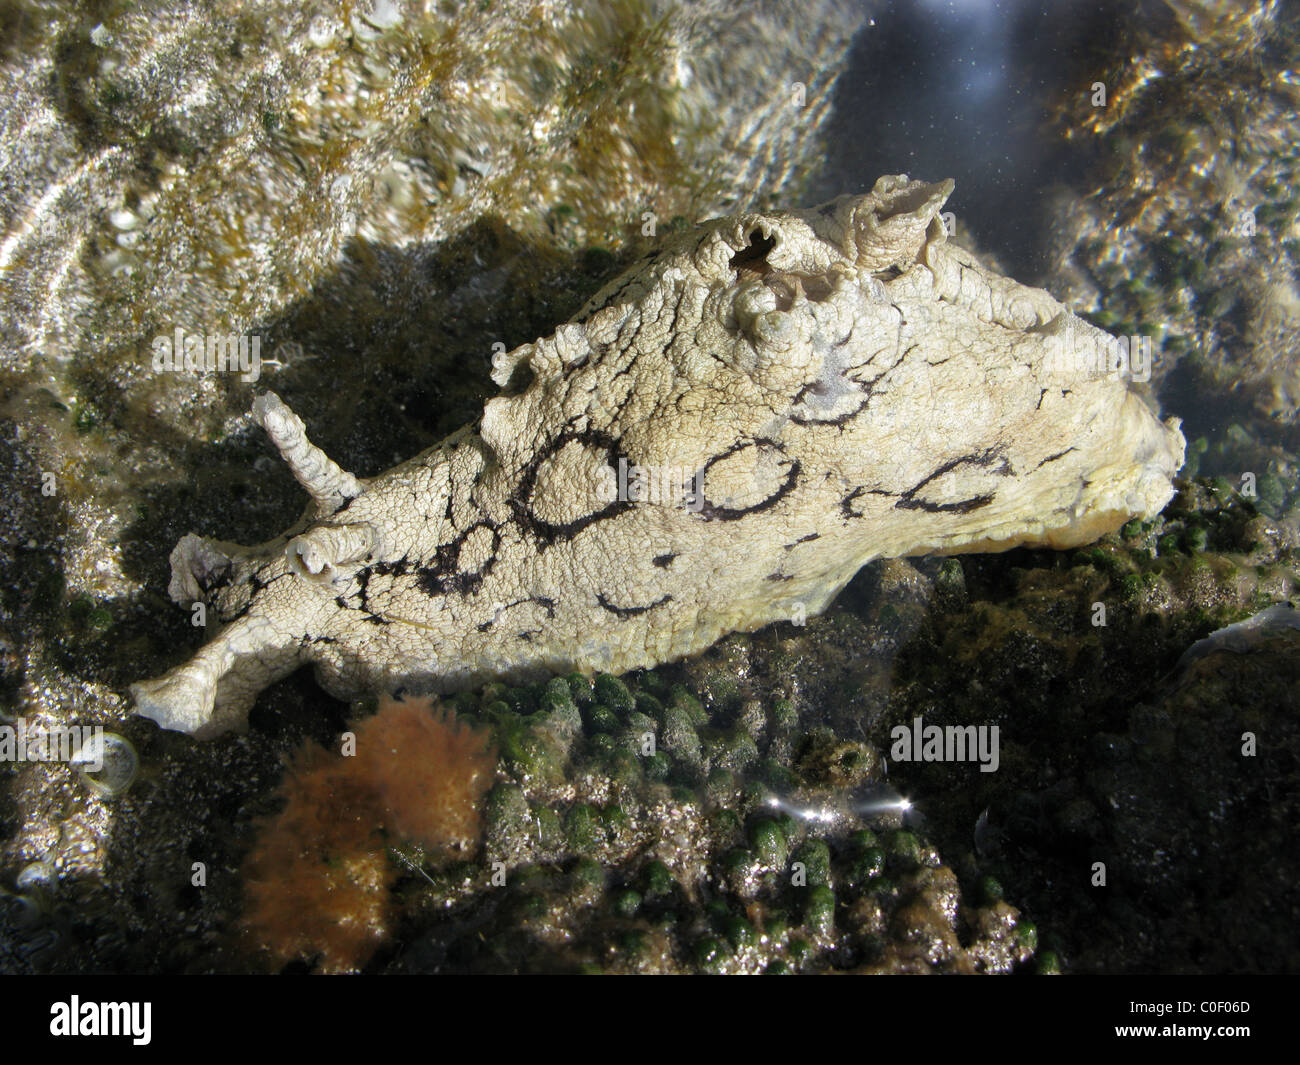 Sea slug nudibranch Stock Photo